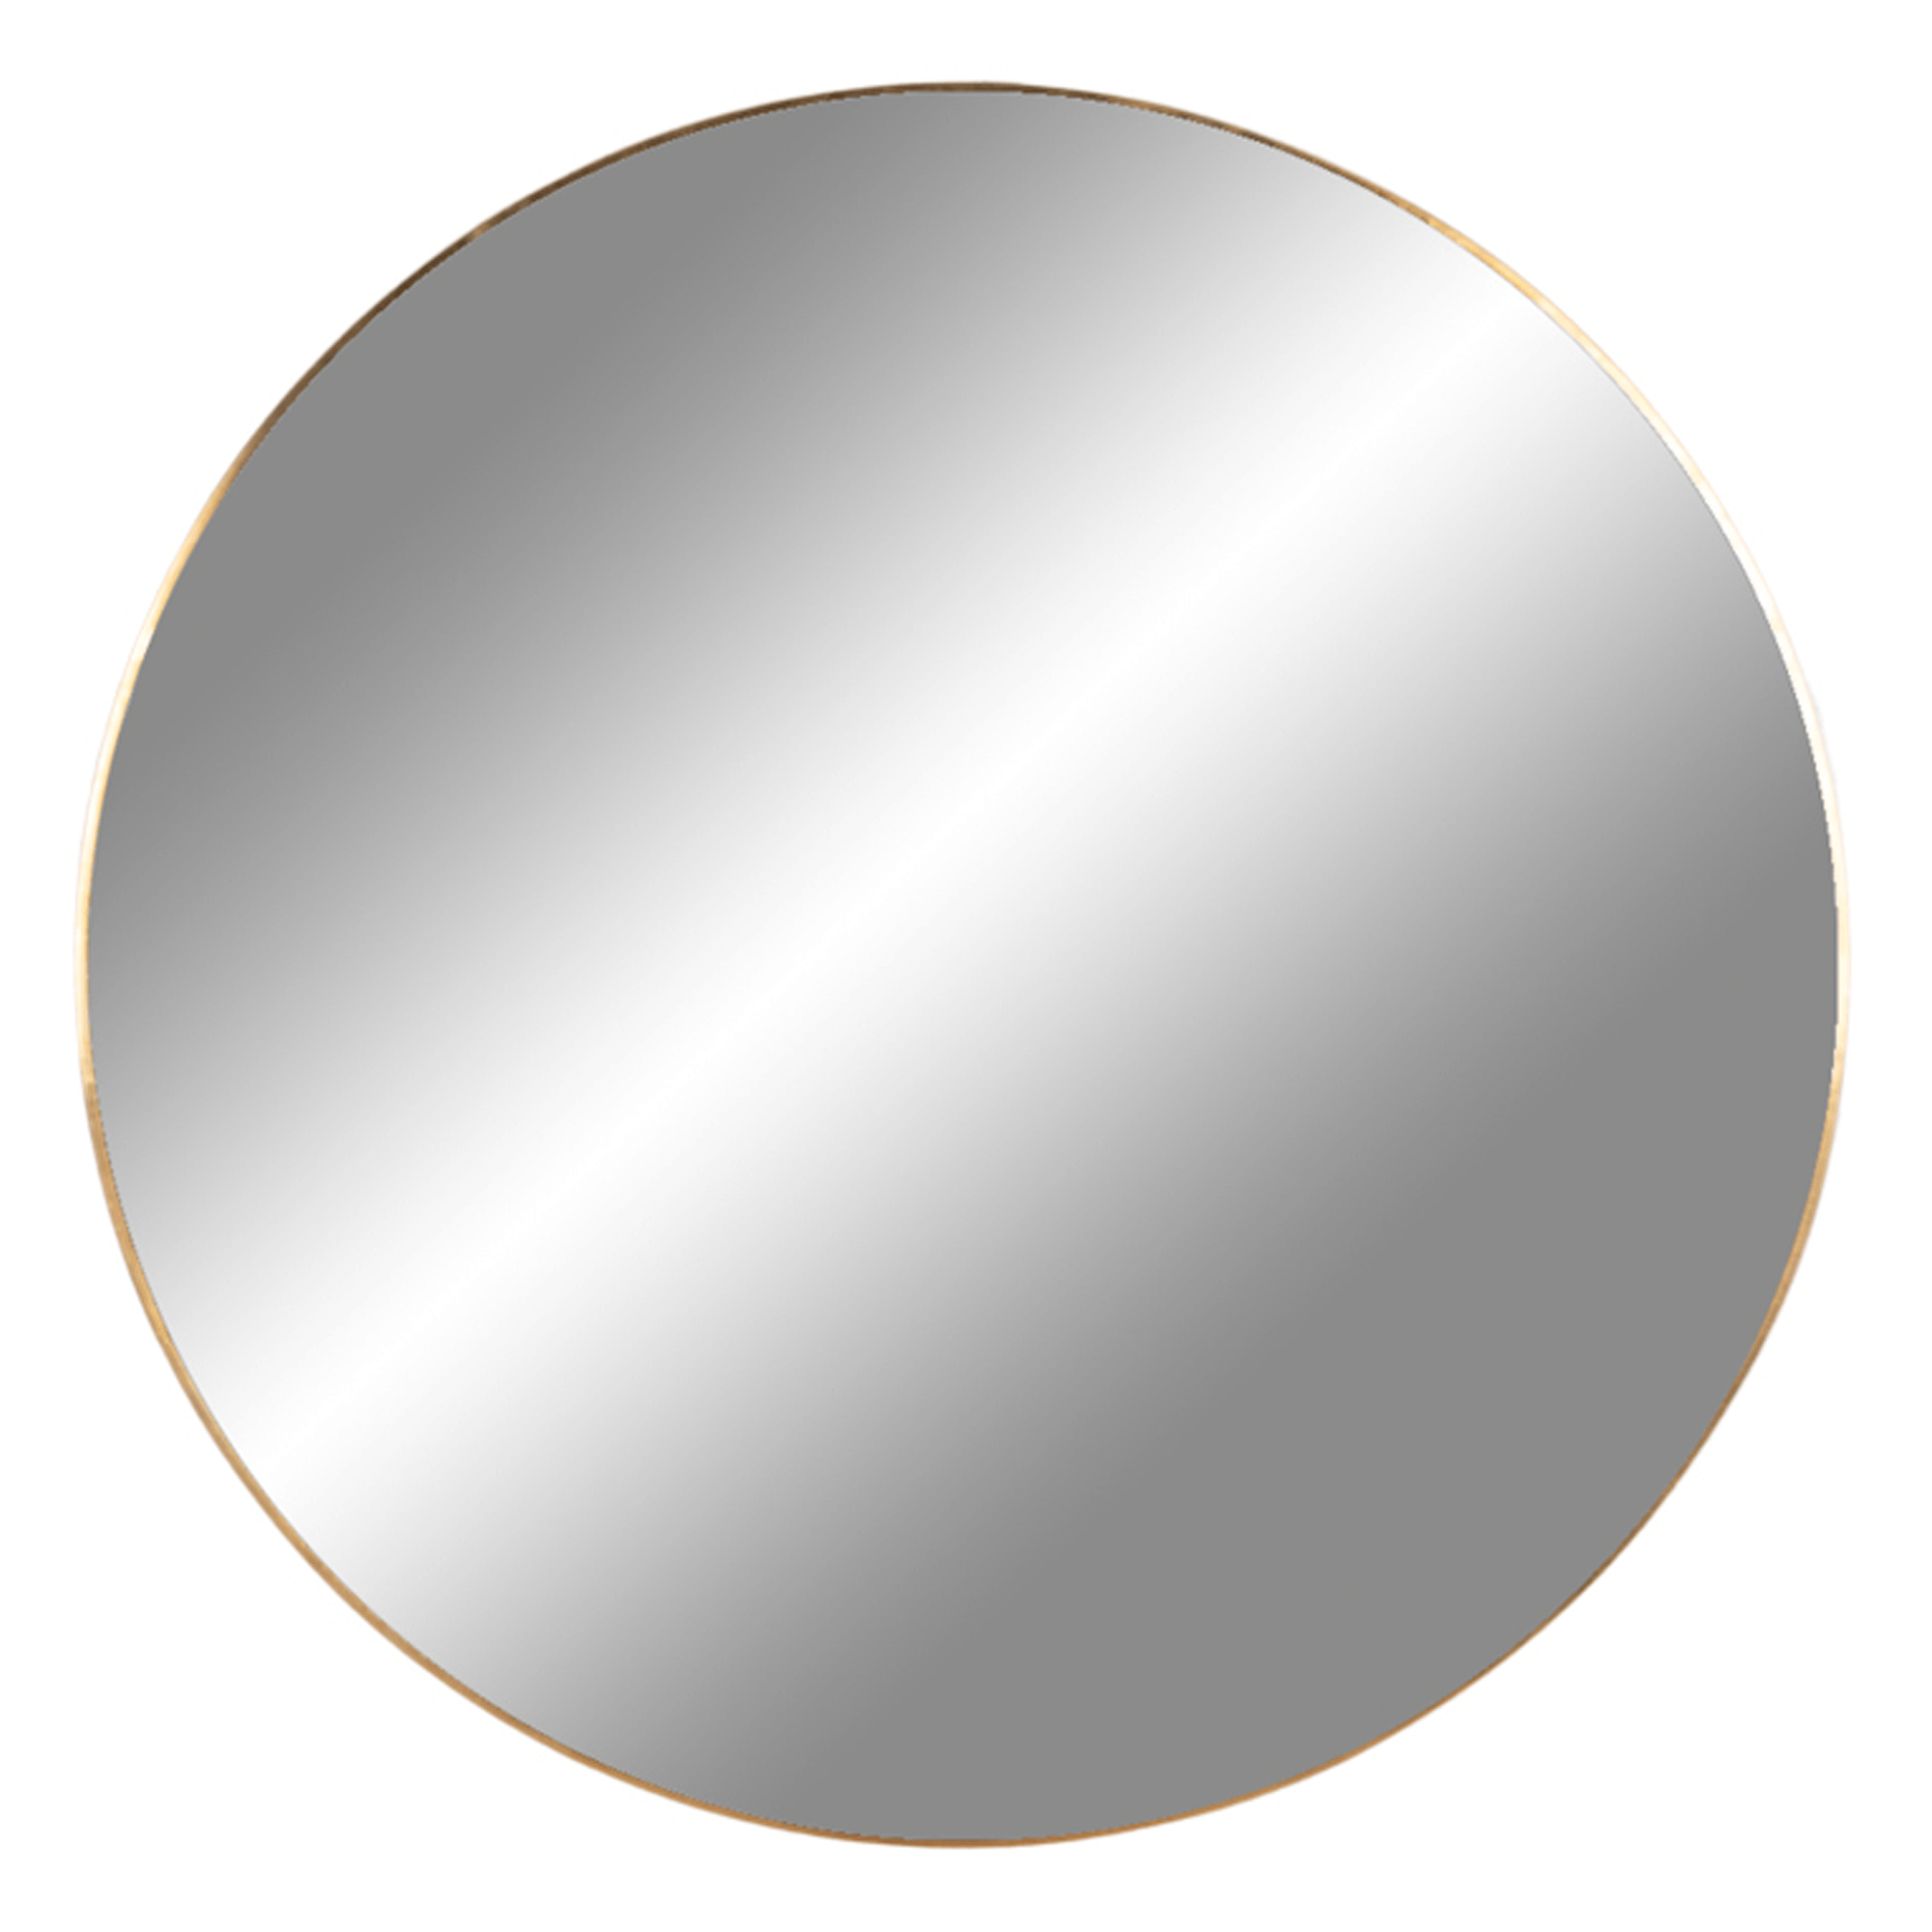 Billede af Cirkel spejl med messing ramme, Ø 60 cm.